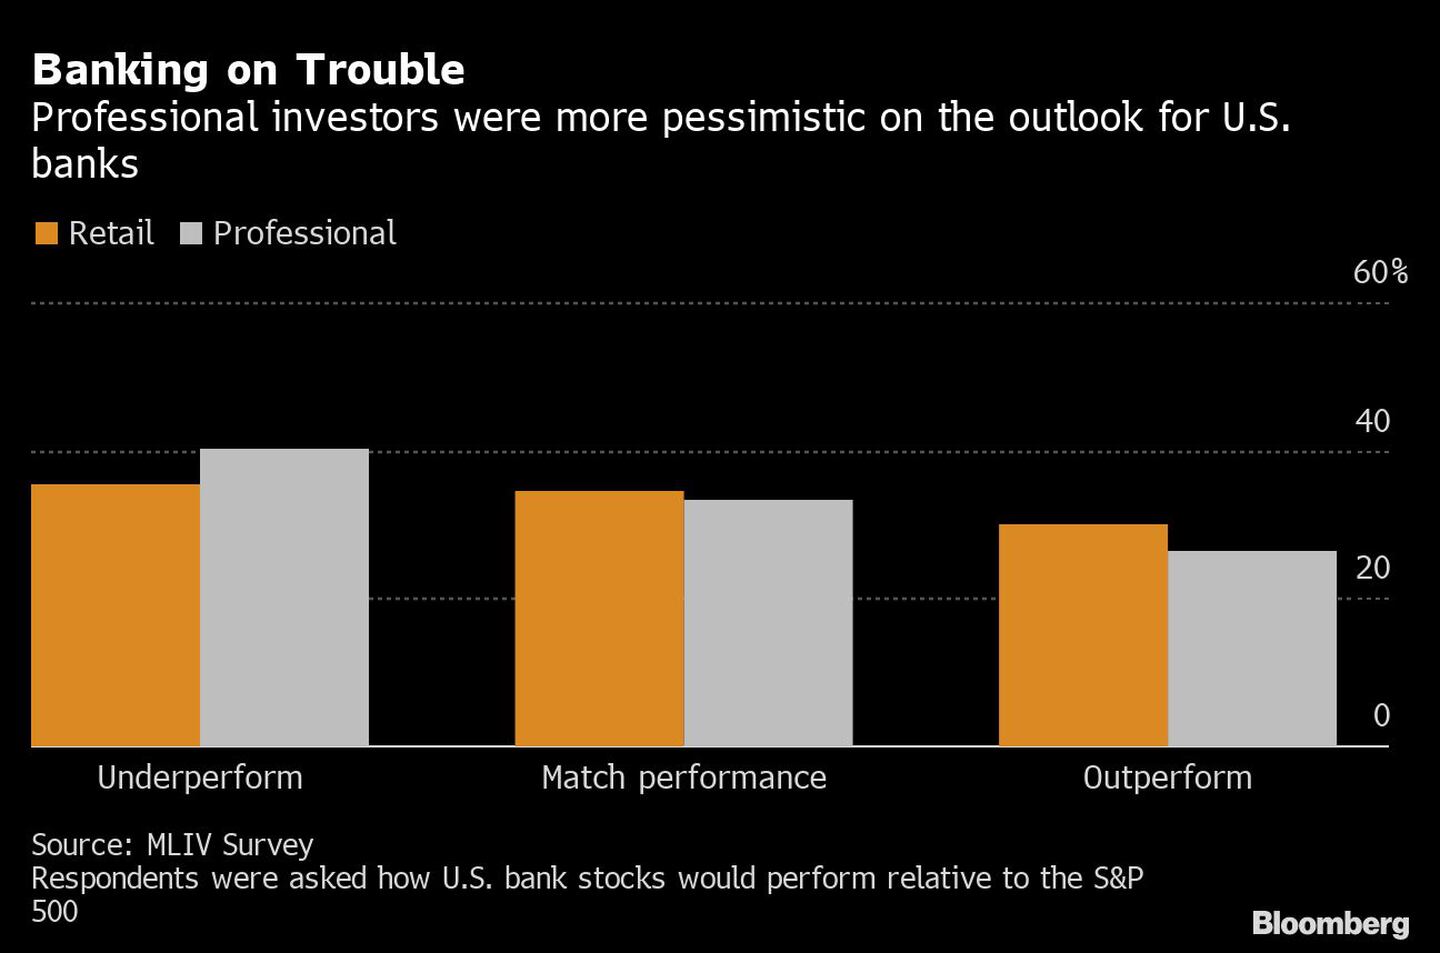 Apostando por los problemas
Los inversores profesionales se mostraron más pesimistas sobre las perspectivas de los bancos estadounidenses
Naranja: Minoristas
Blanco: Profesionales
De izquierda a derecha: Rendimiento inferior, igualar el rendimiento, superar el rendimientodfd